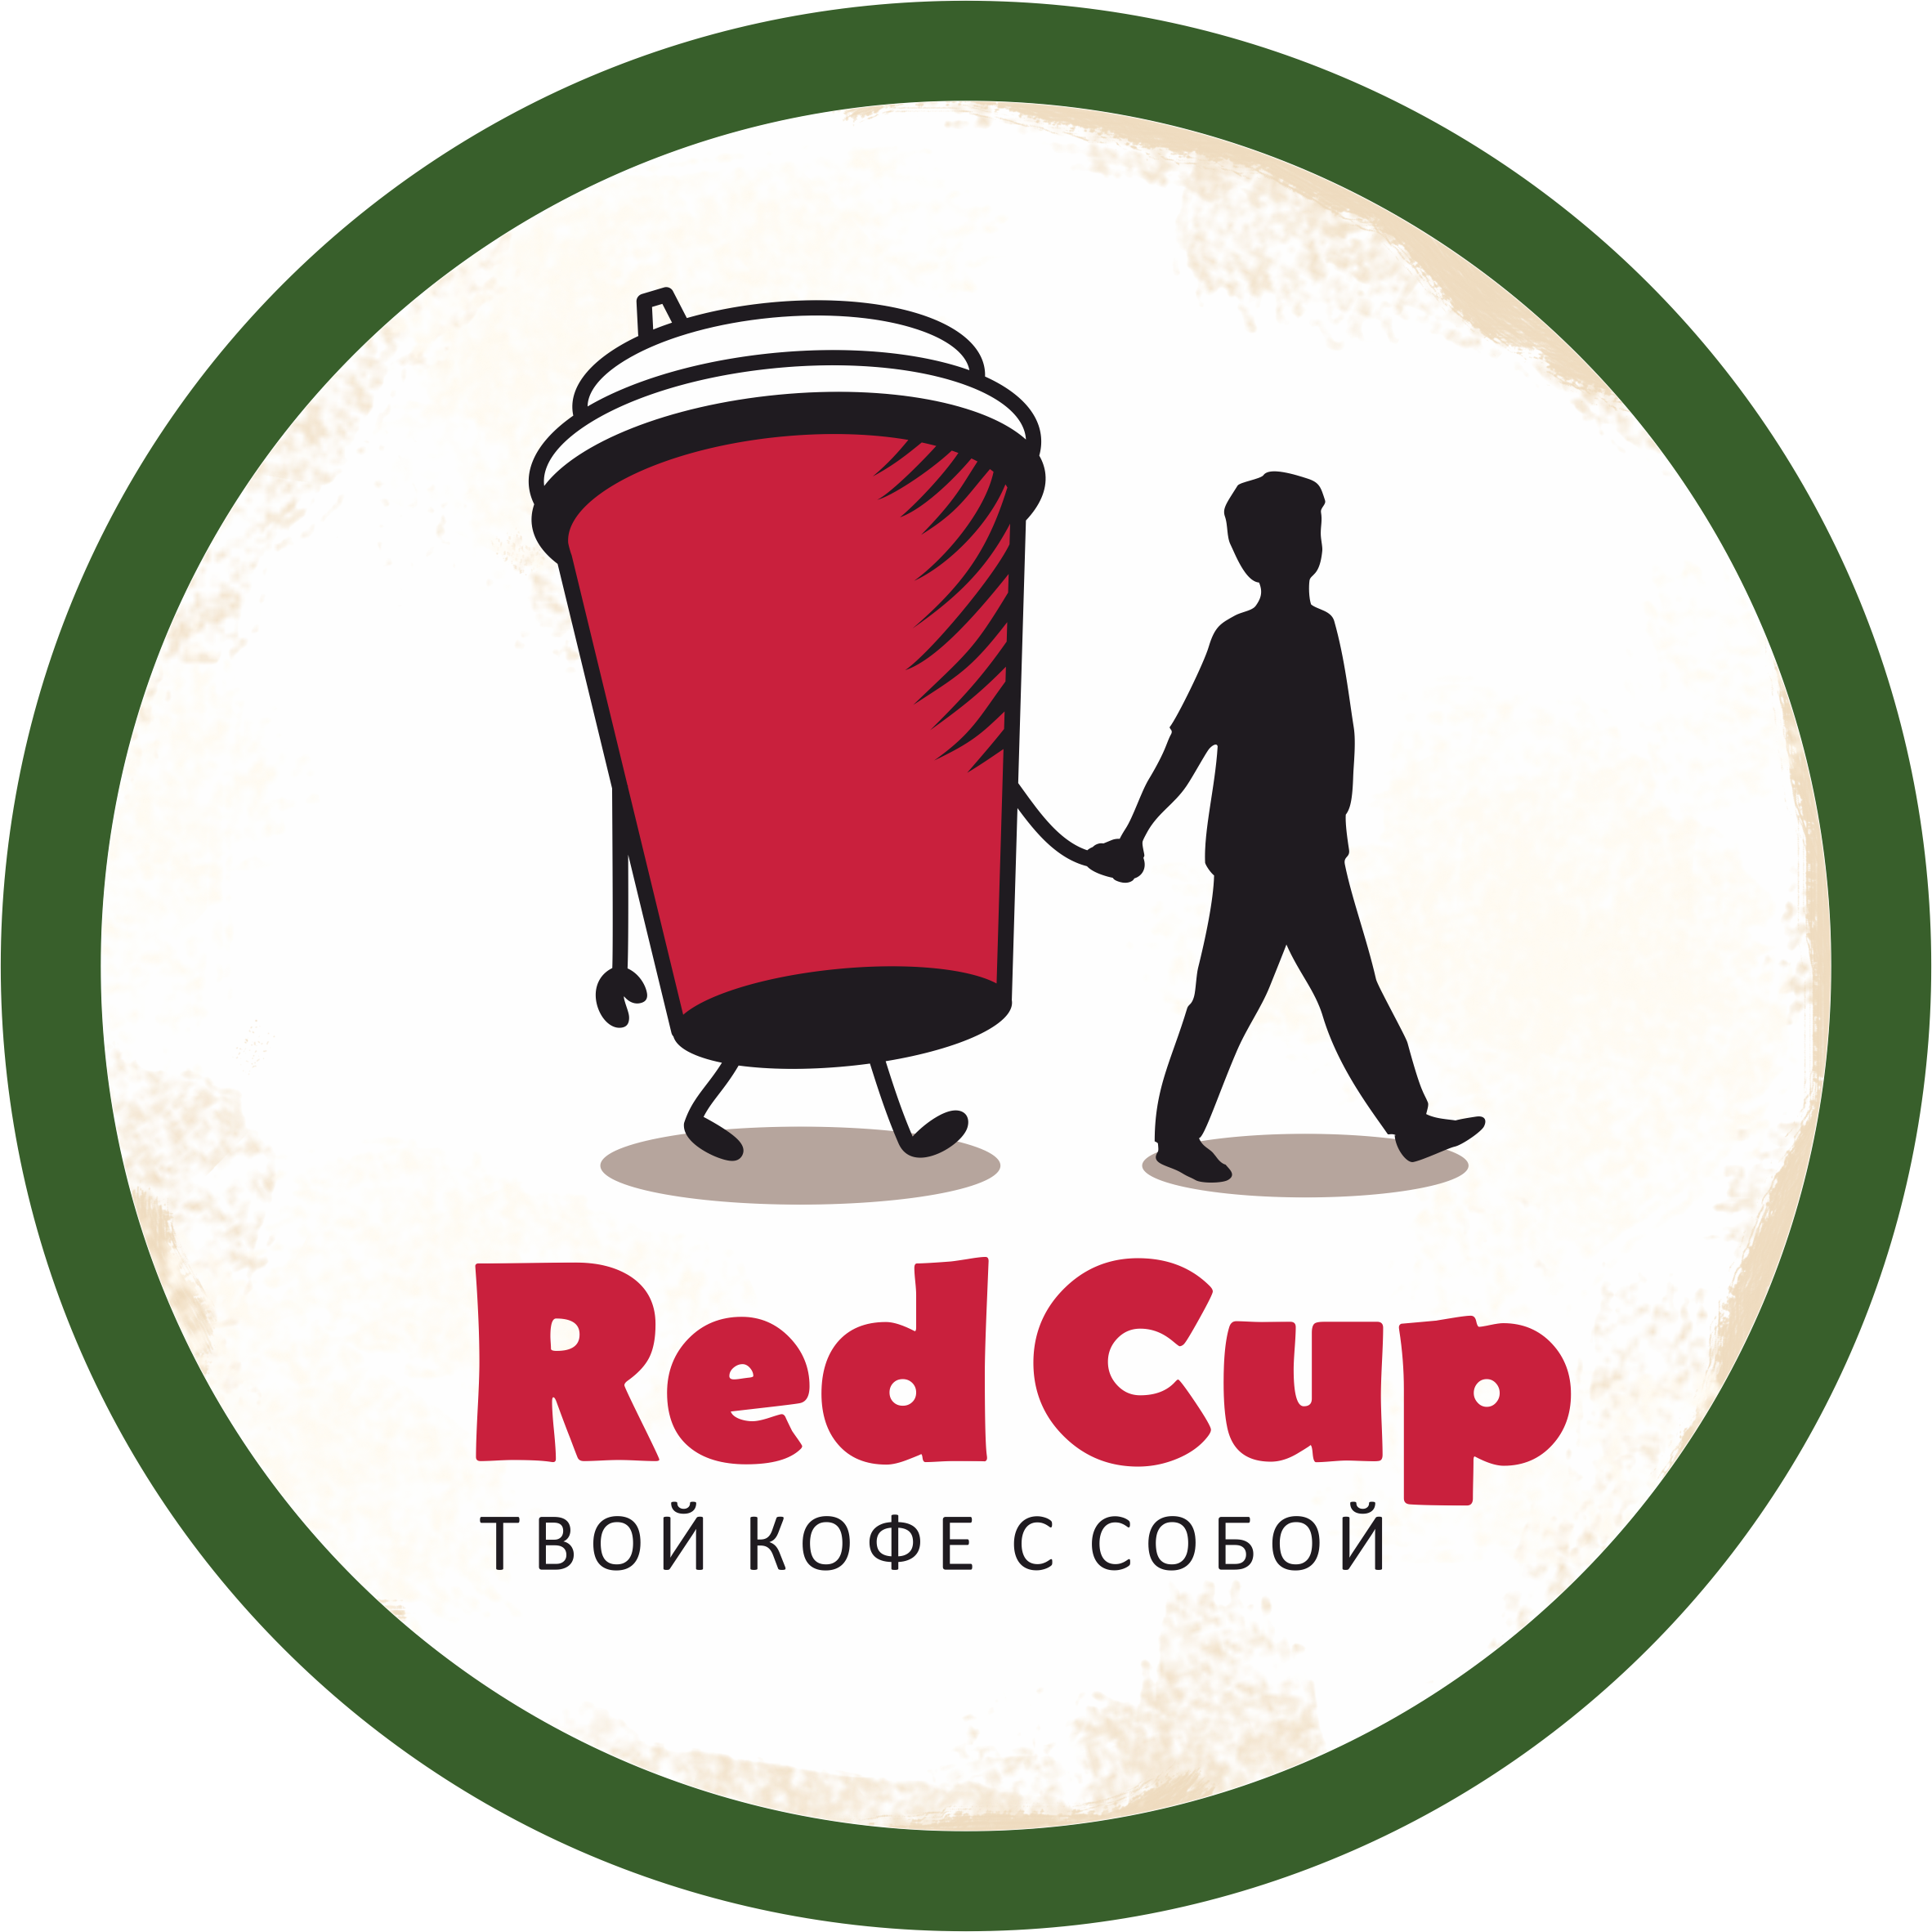 Red Cup кофе. Логотип кофе с собой. Red Cup кофейня. Red Cup логотип. One cup coffee